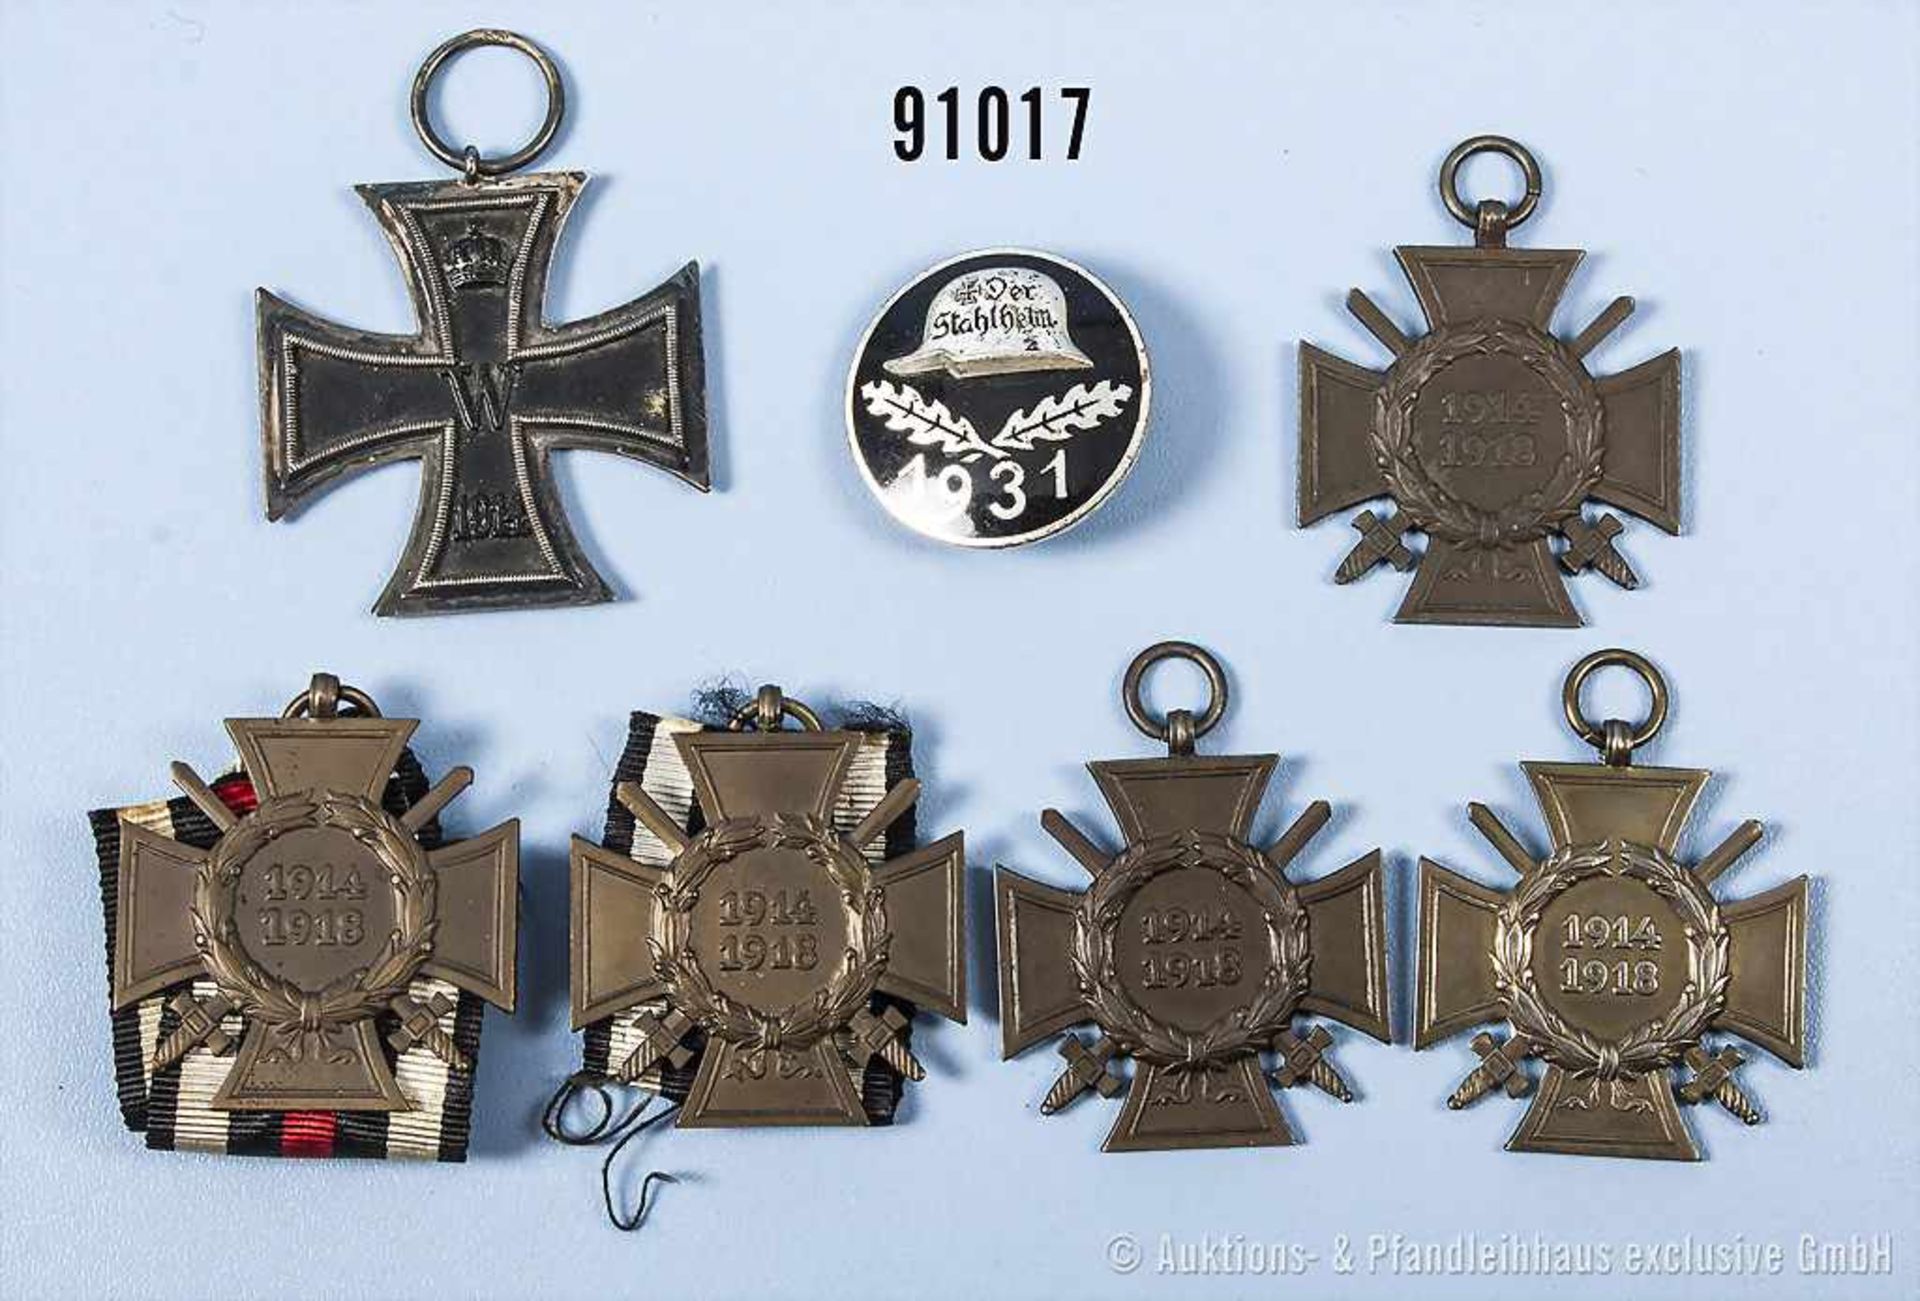 Konv. EK 2 1914, 5 EKF sowie Stahlhelmbund Eintrittsabzeichen von 1931, rückseitig graviert,